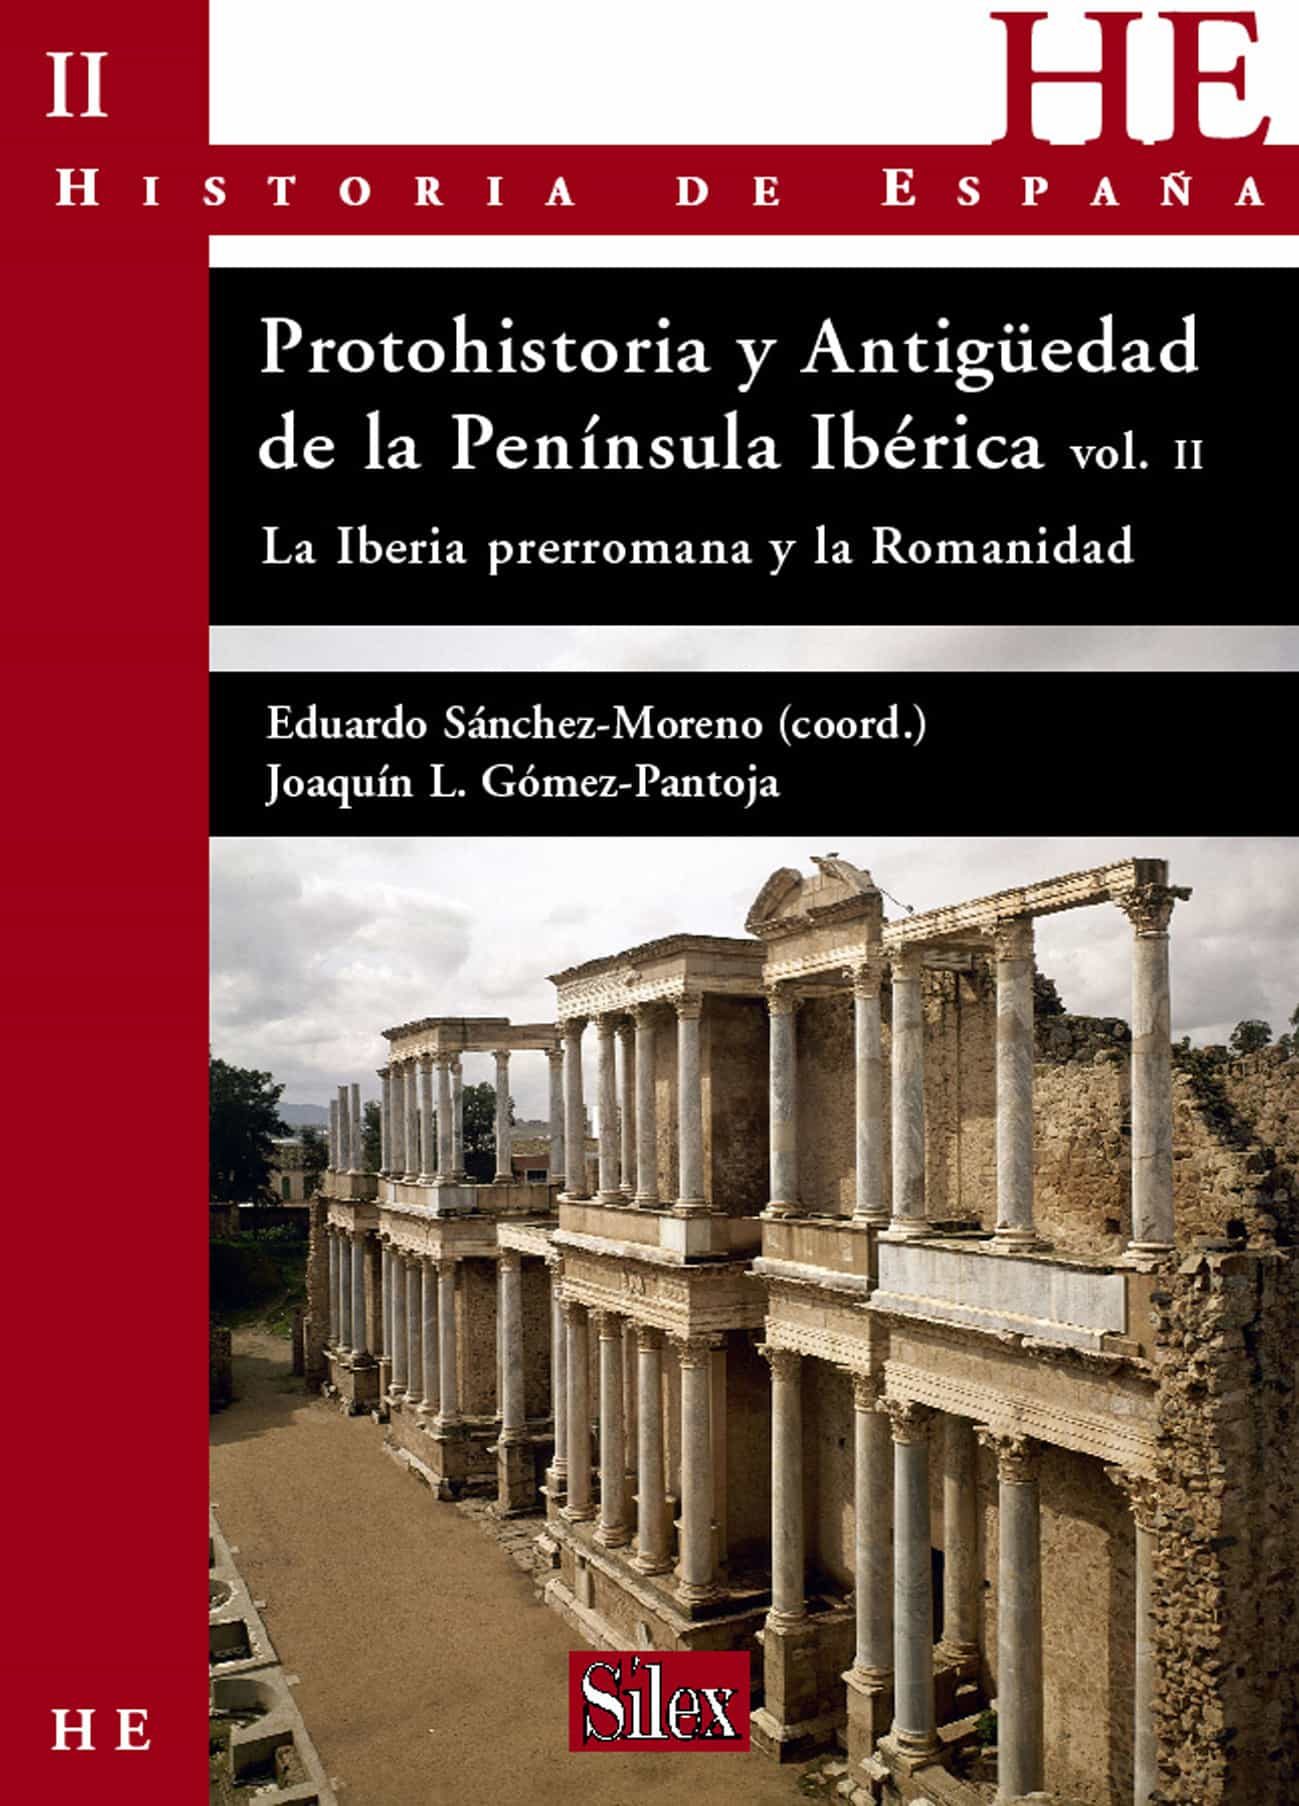 Imagen de portada del libro Protohistoria y Antigüedad de la Península Ibérica